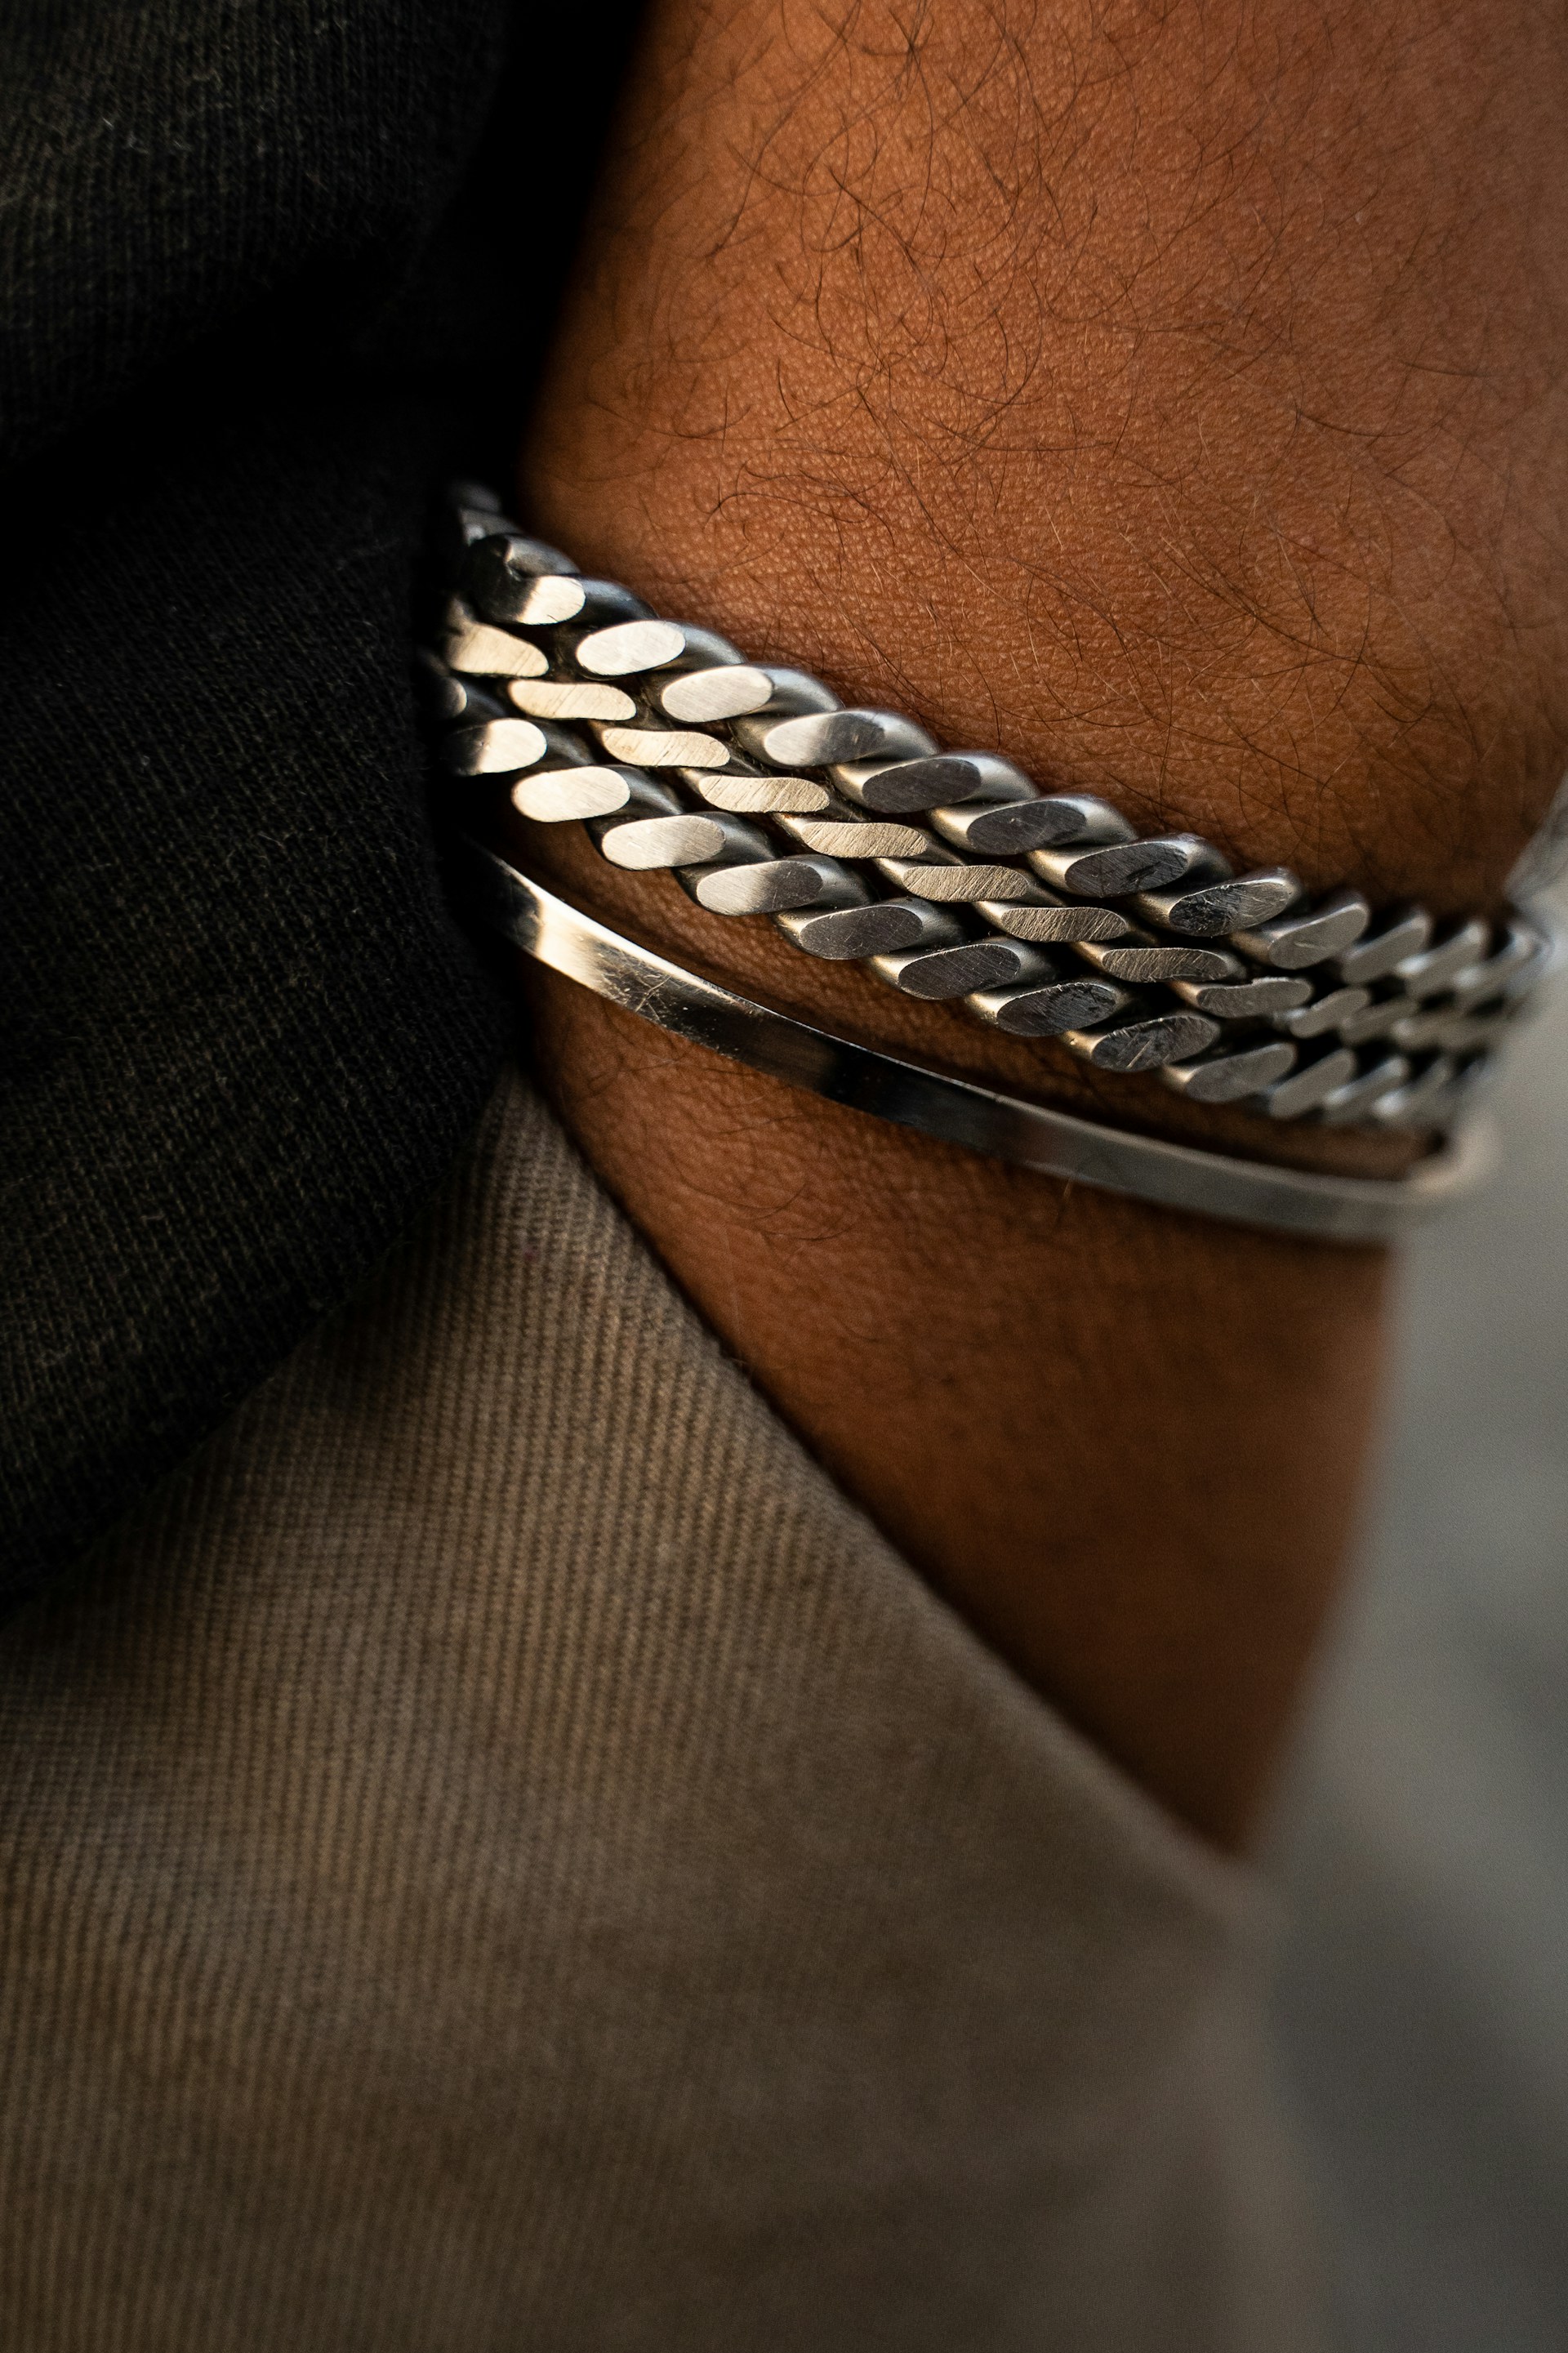 silver and diamond studded bracelet